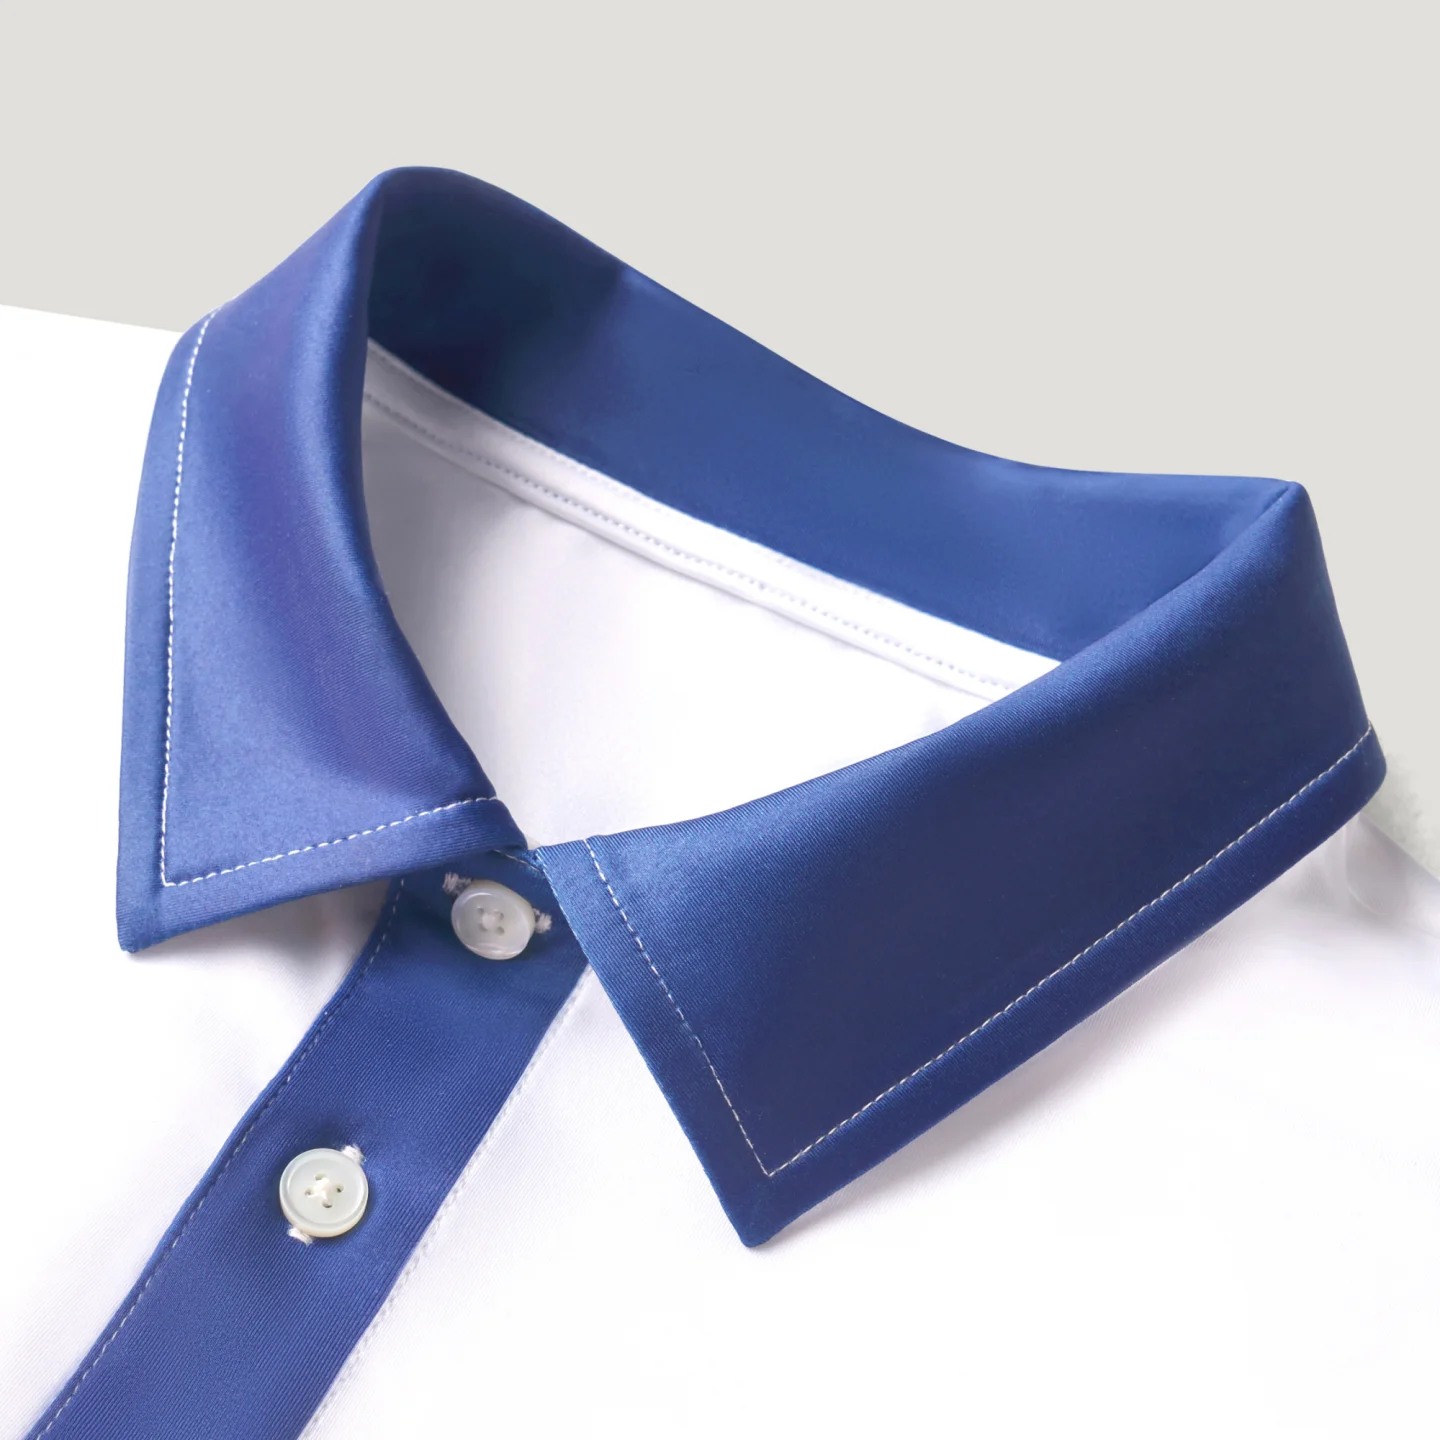 Louis Vuitton Polo. Blue collar. XXXL- more of an XL. - Depop